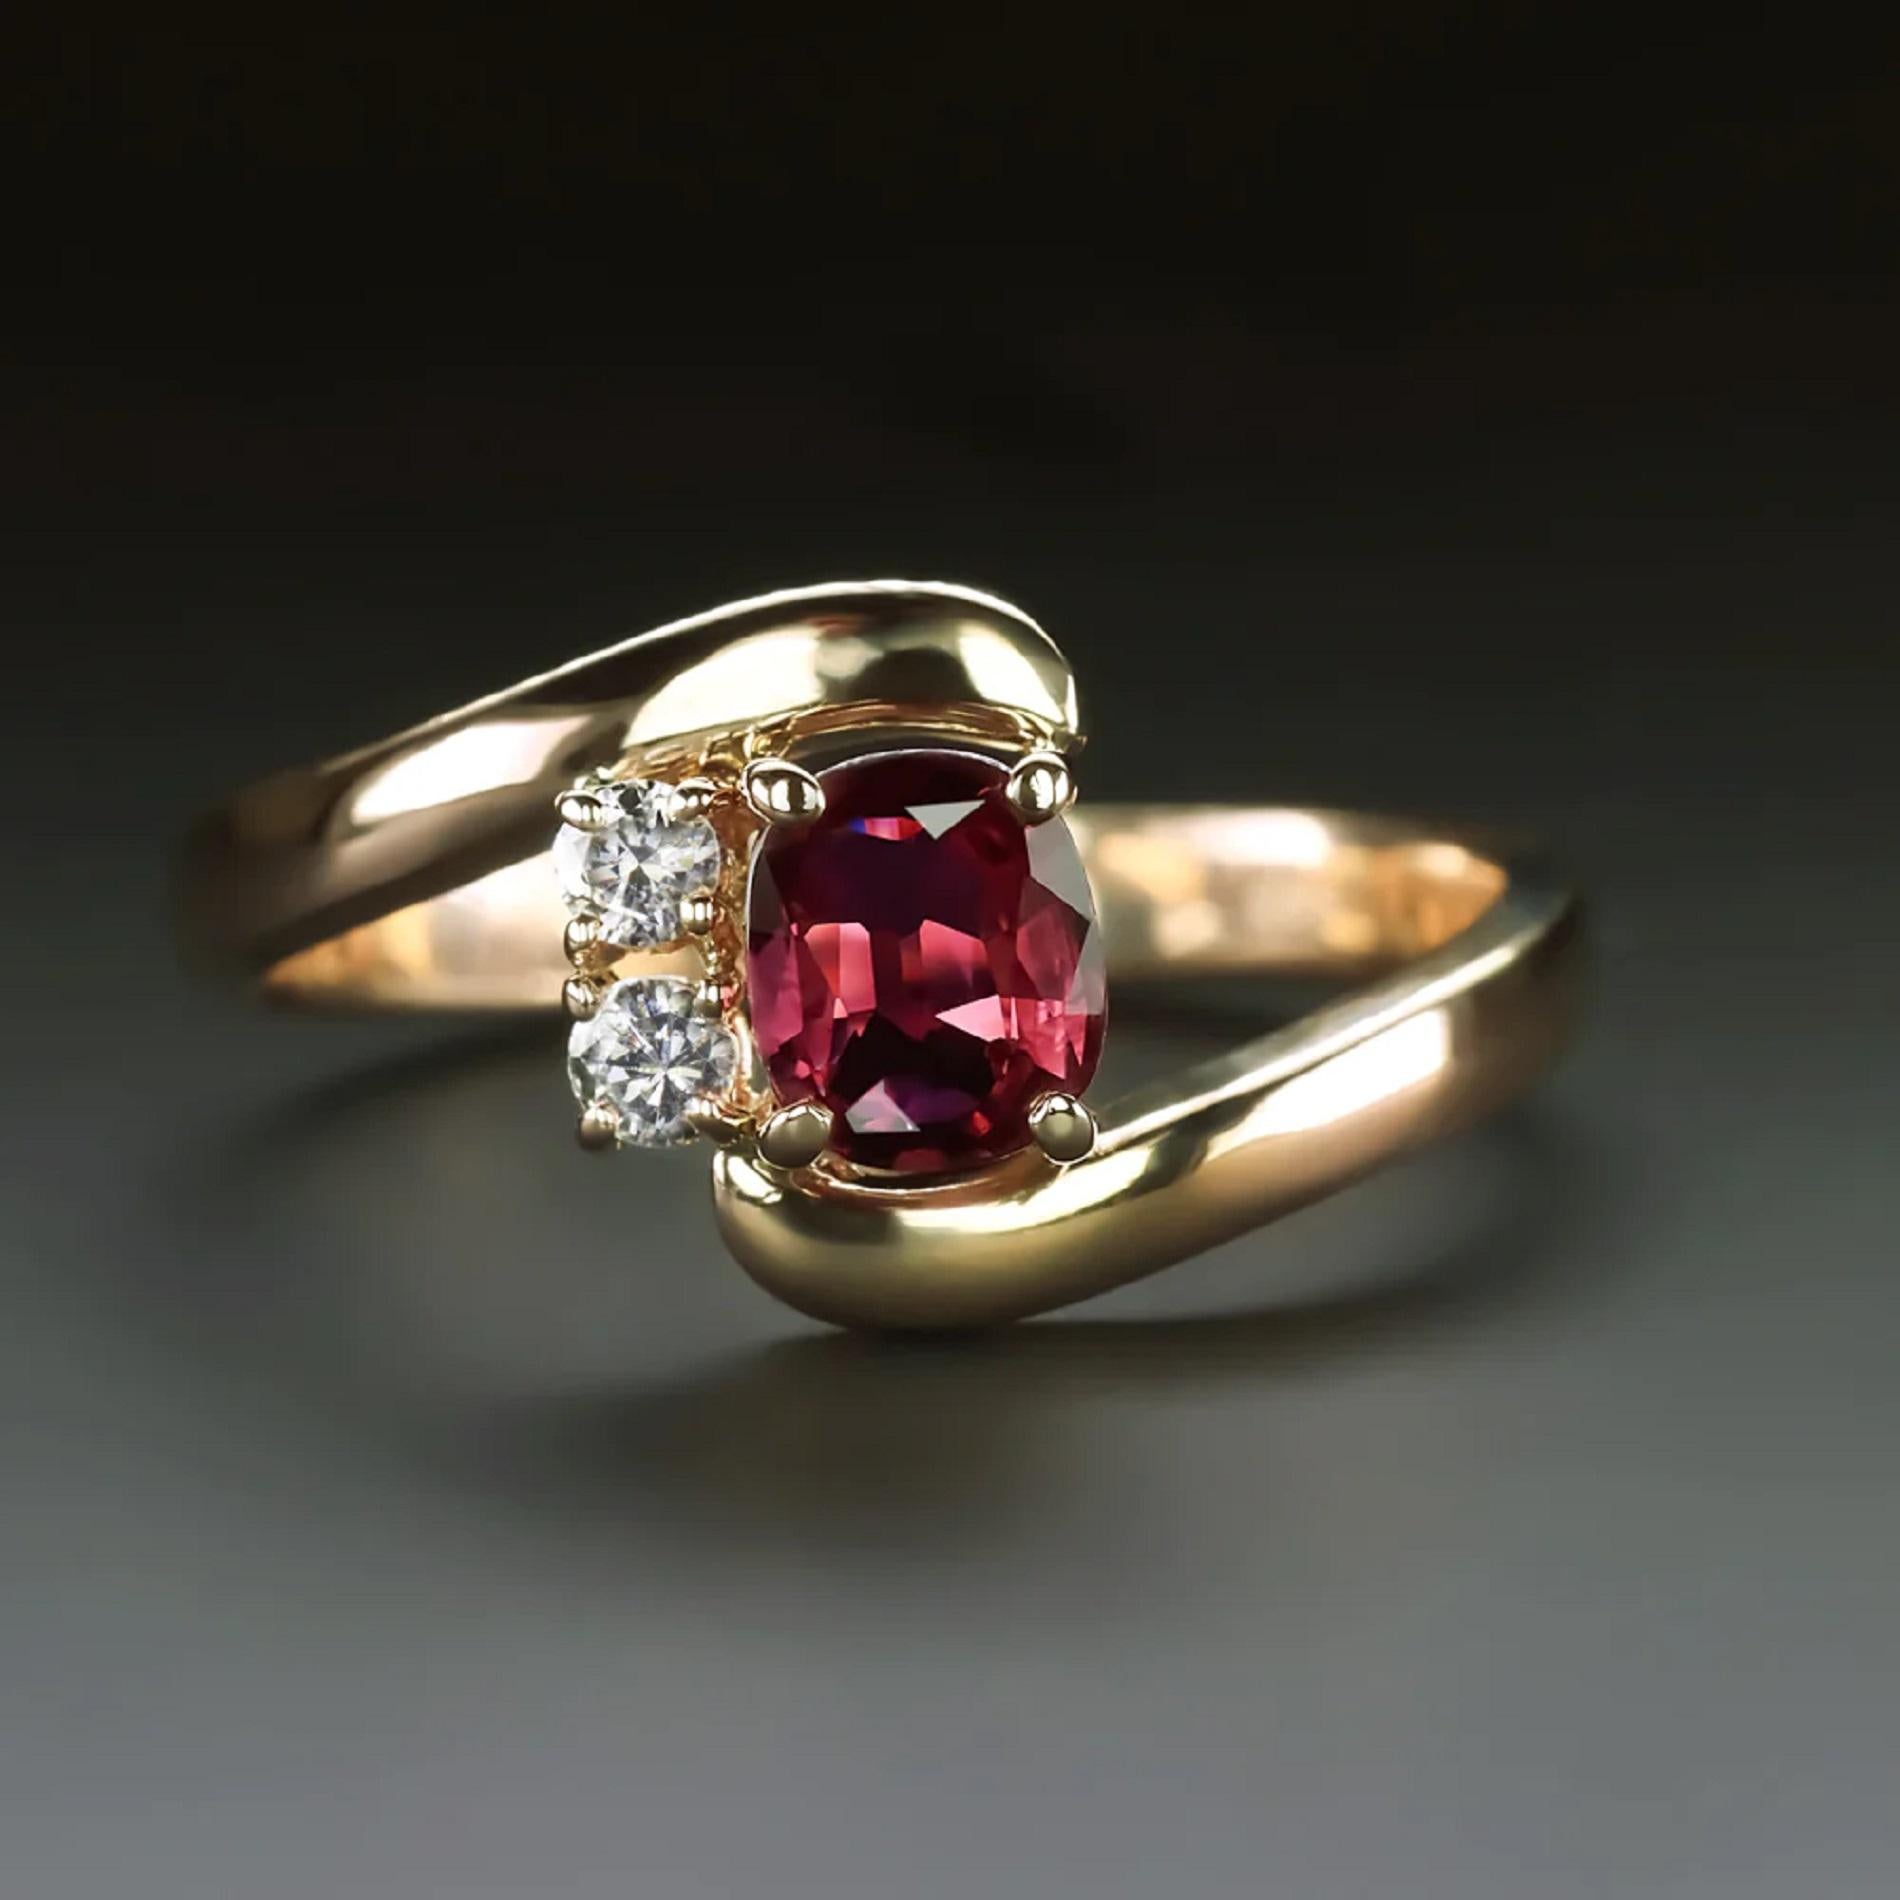 Cette douce bague en rubis et diamants présente un riche rubis rouge et une paire de diamants au centre d'une élégante bague à pont.

Faits marquants :

- Rubis naturel de 0,72ct de taille ovale au centre, d'une magnifique couleur rouge vif !

-